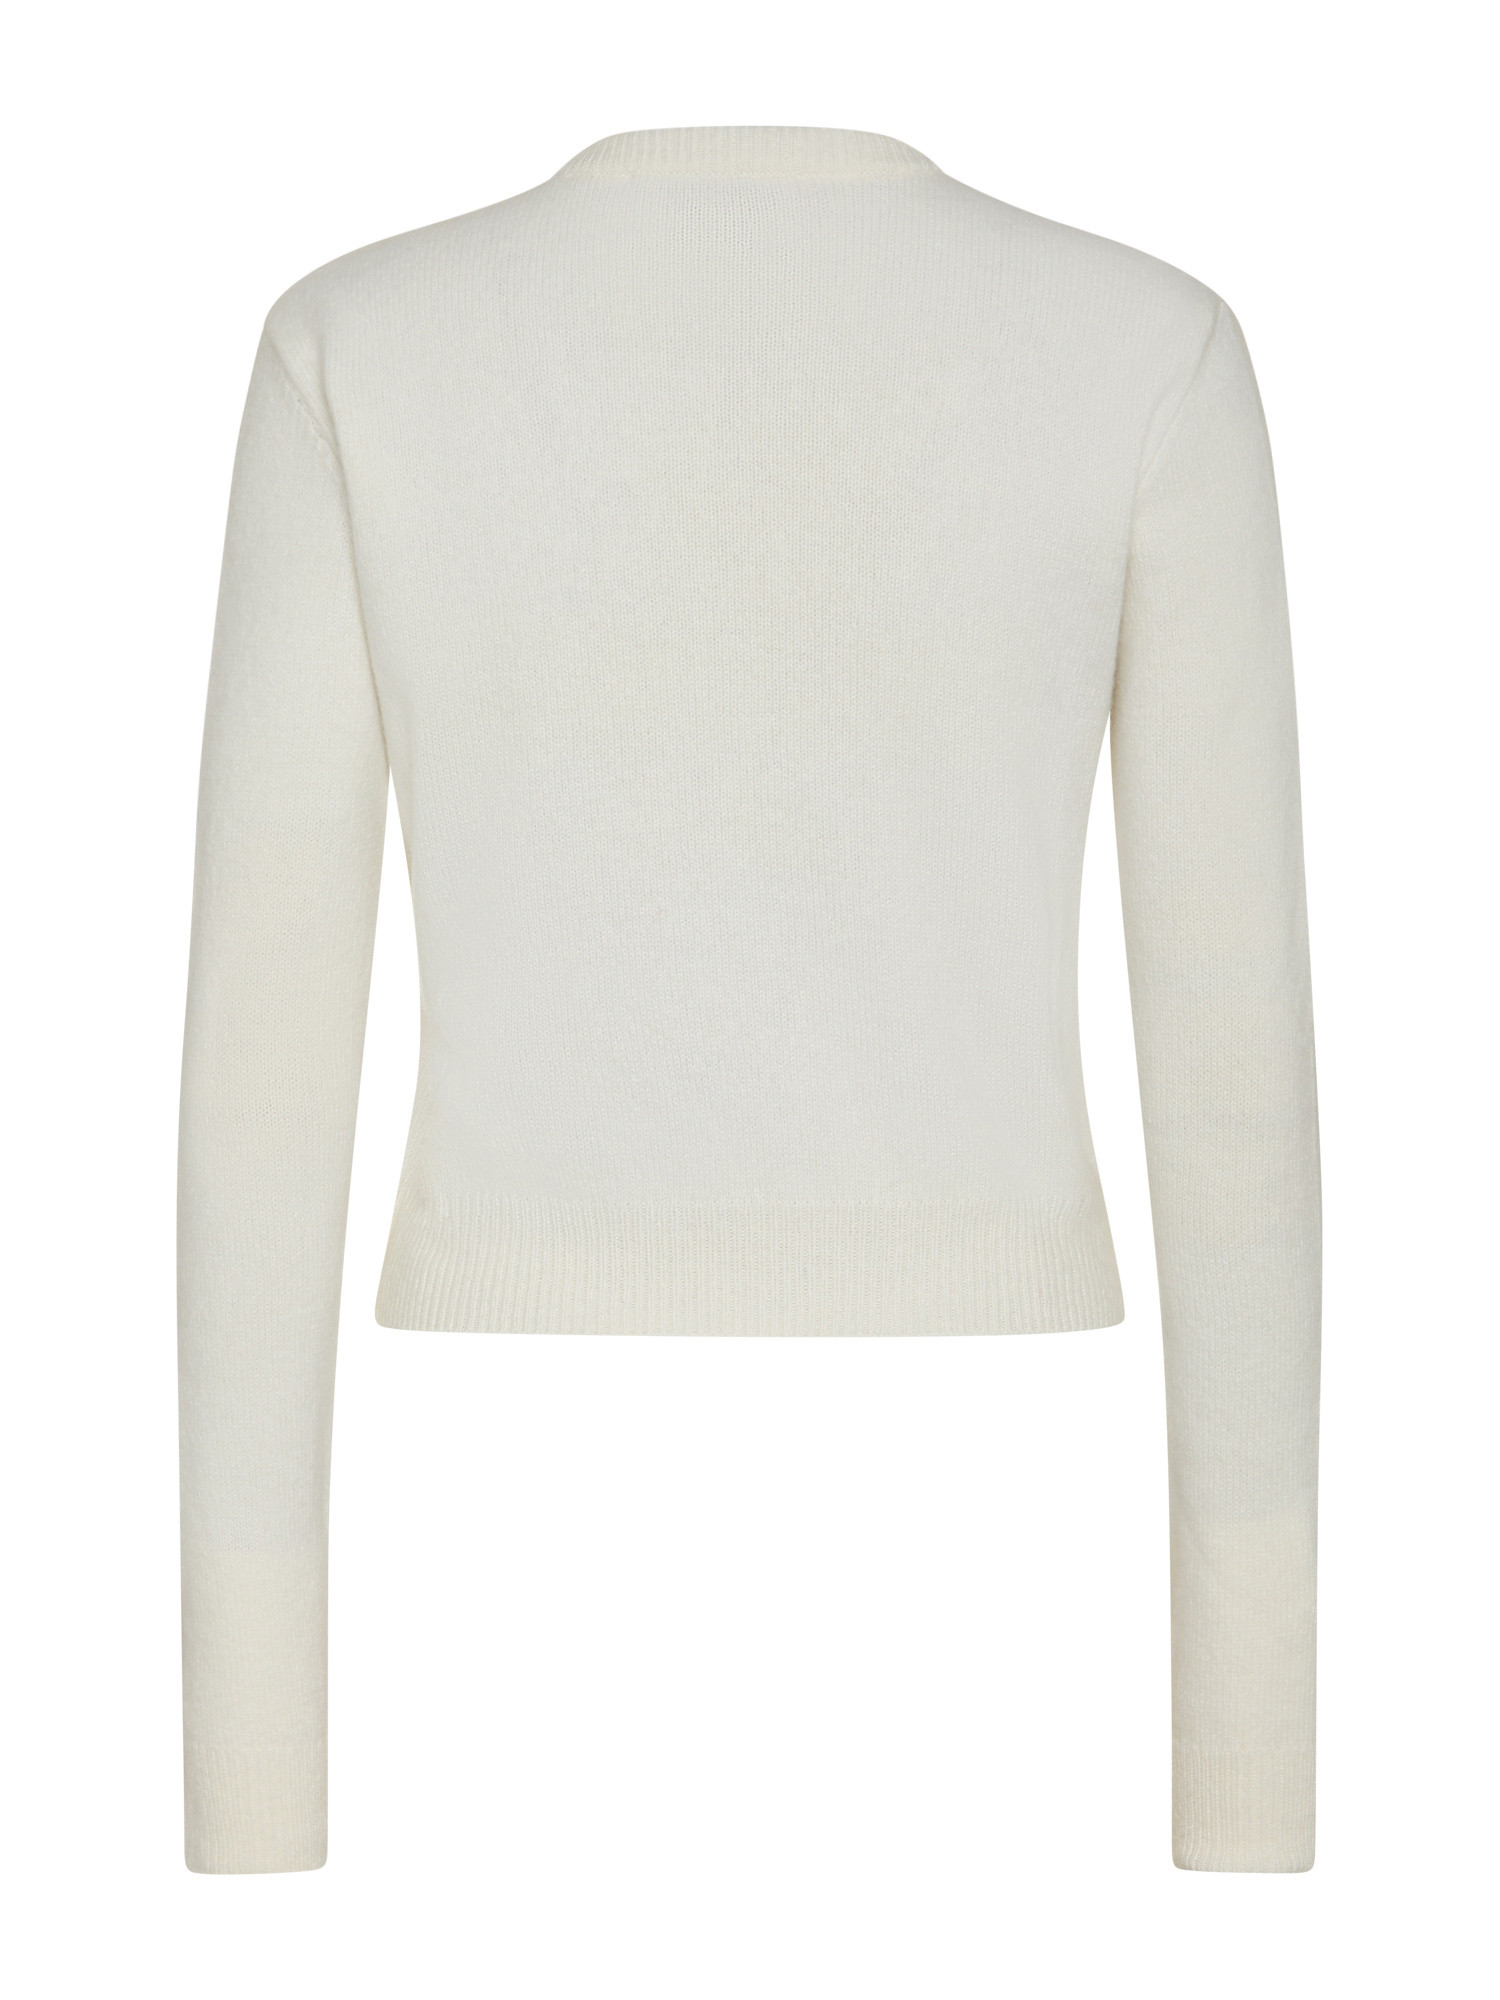 Chiara Ferragni - Ferragni stretch sweater, White, large image number 1